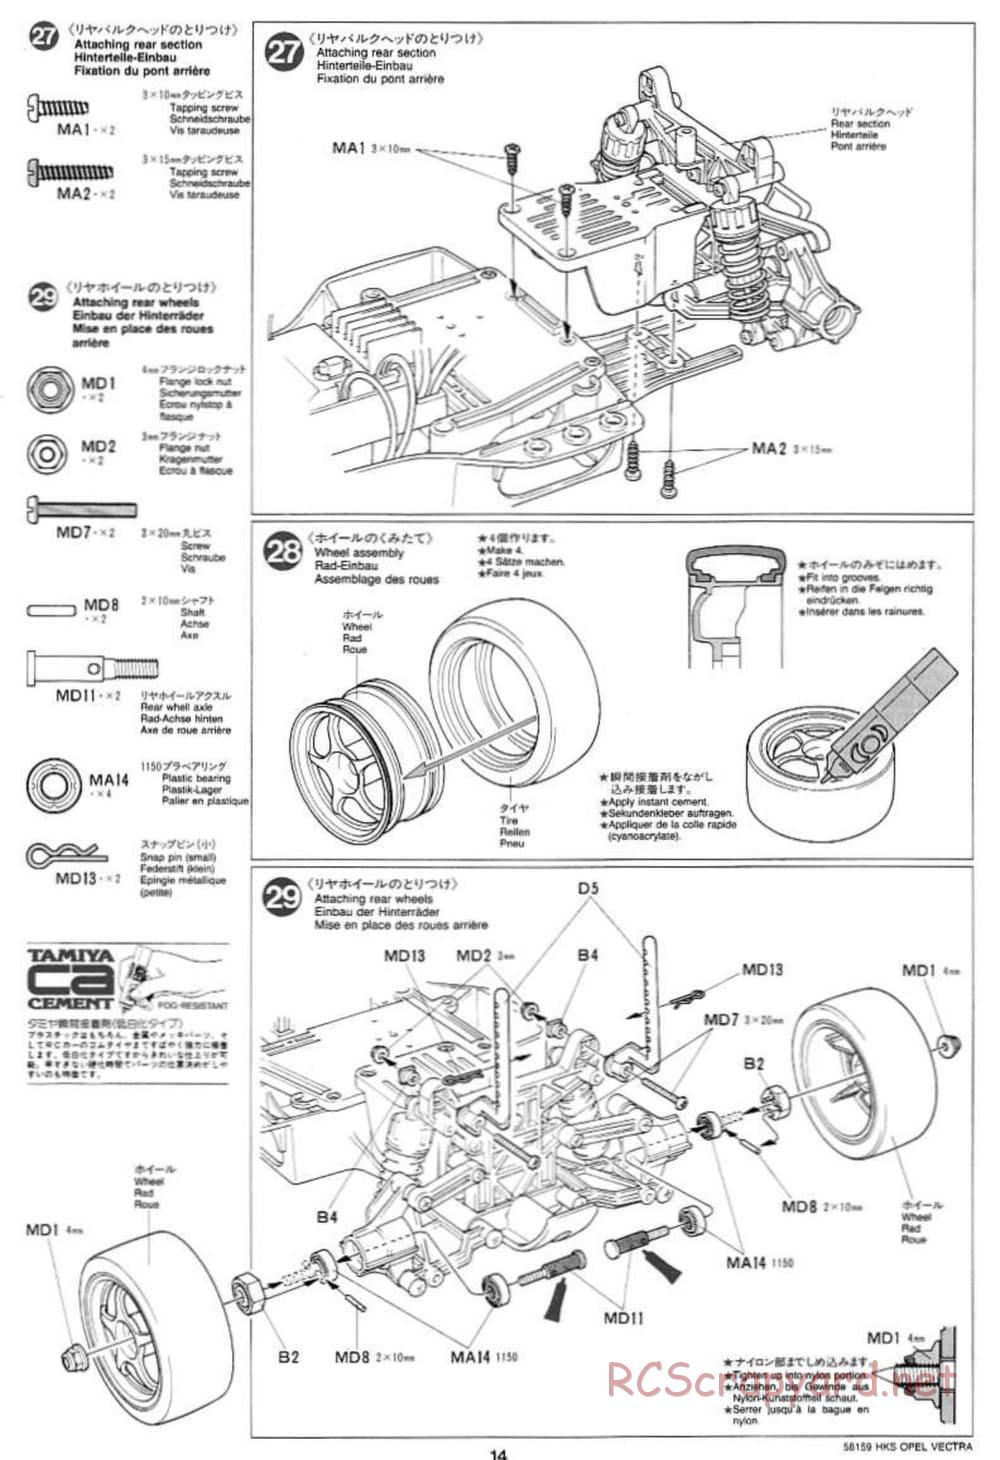 Tamiya - HKS Opel Vectra JTCC - FF-01 Chassis - Manual - Page 14